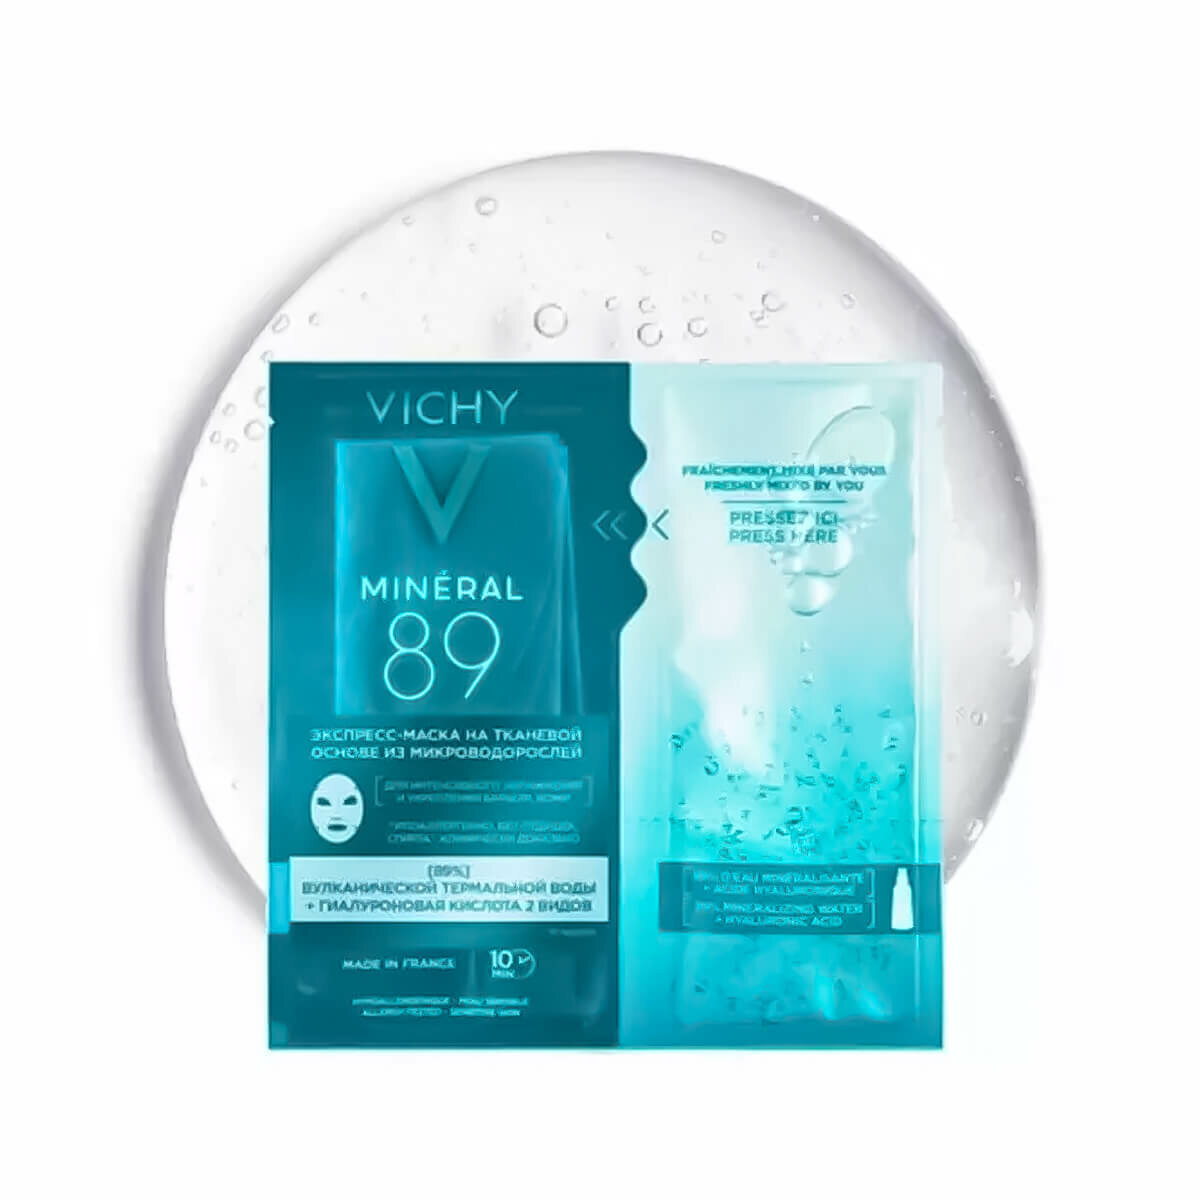 Vichy Экспресс-маска на тканевой основе 29 гр (Vichy, ) - фото №5